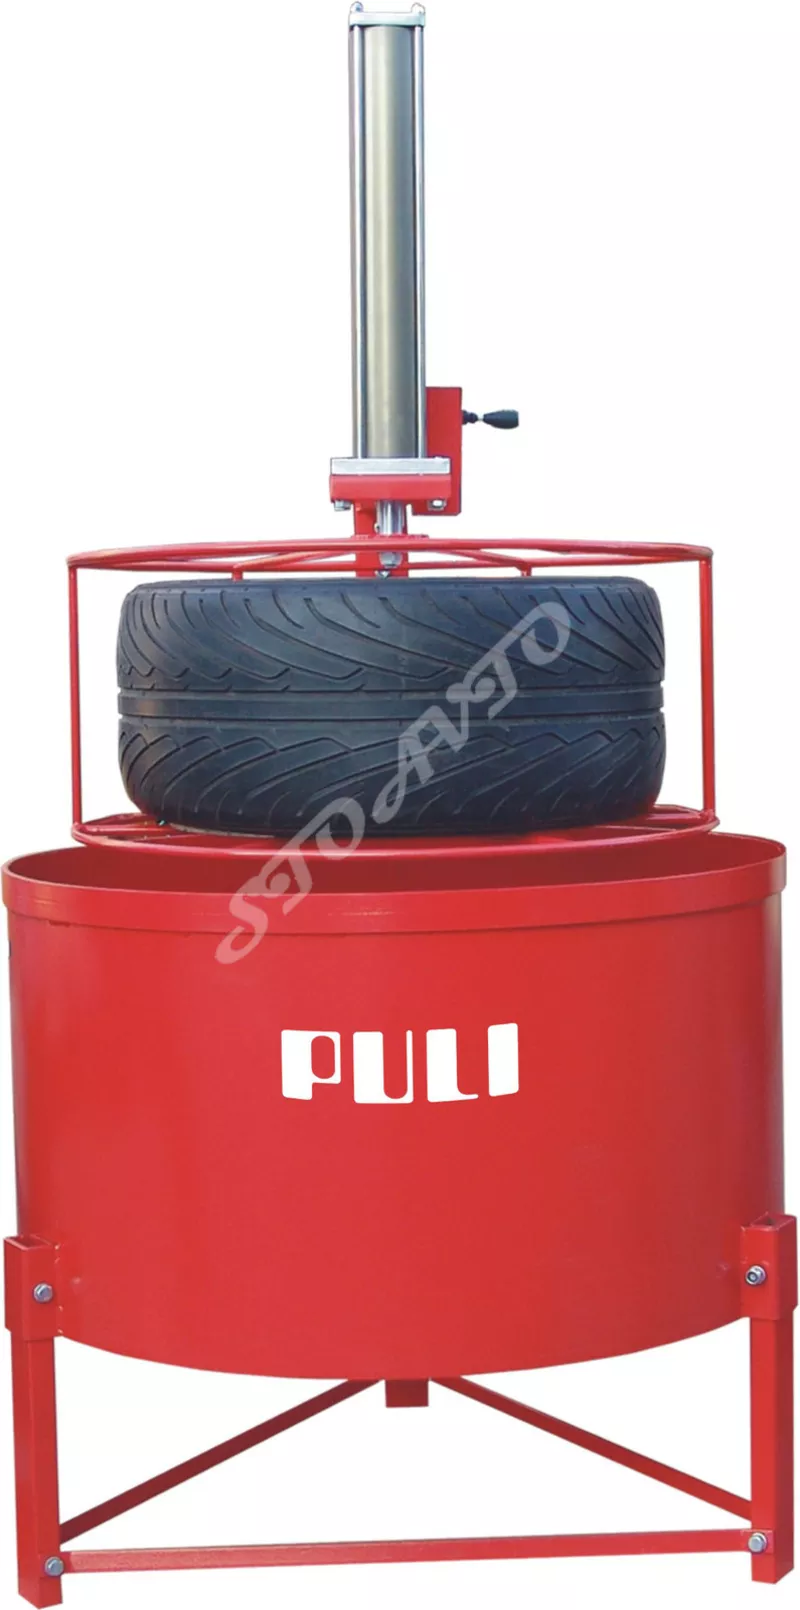 Ванна для проверки шин PULI PL-T680-оборудование для автосервиса, СТО